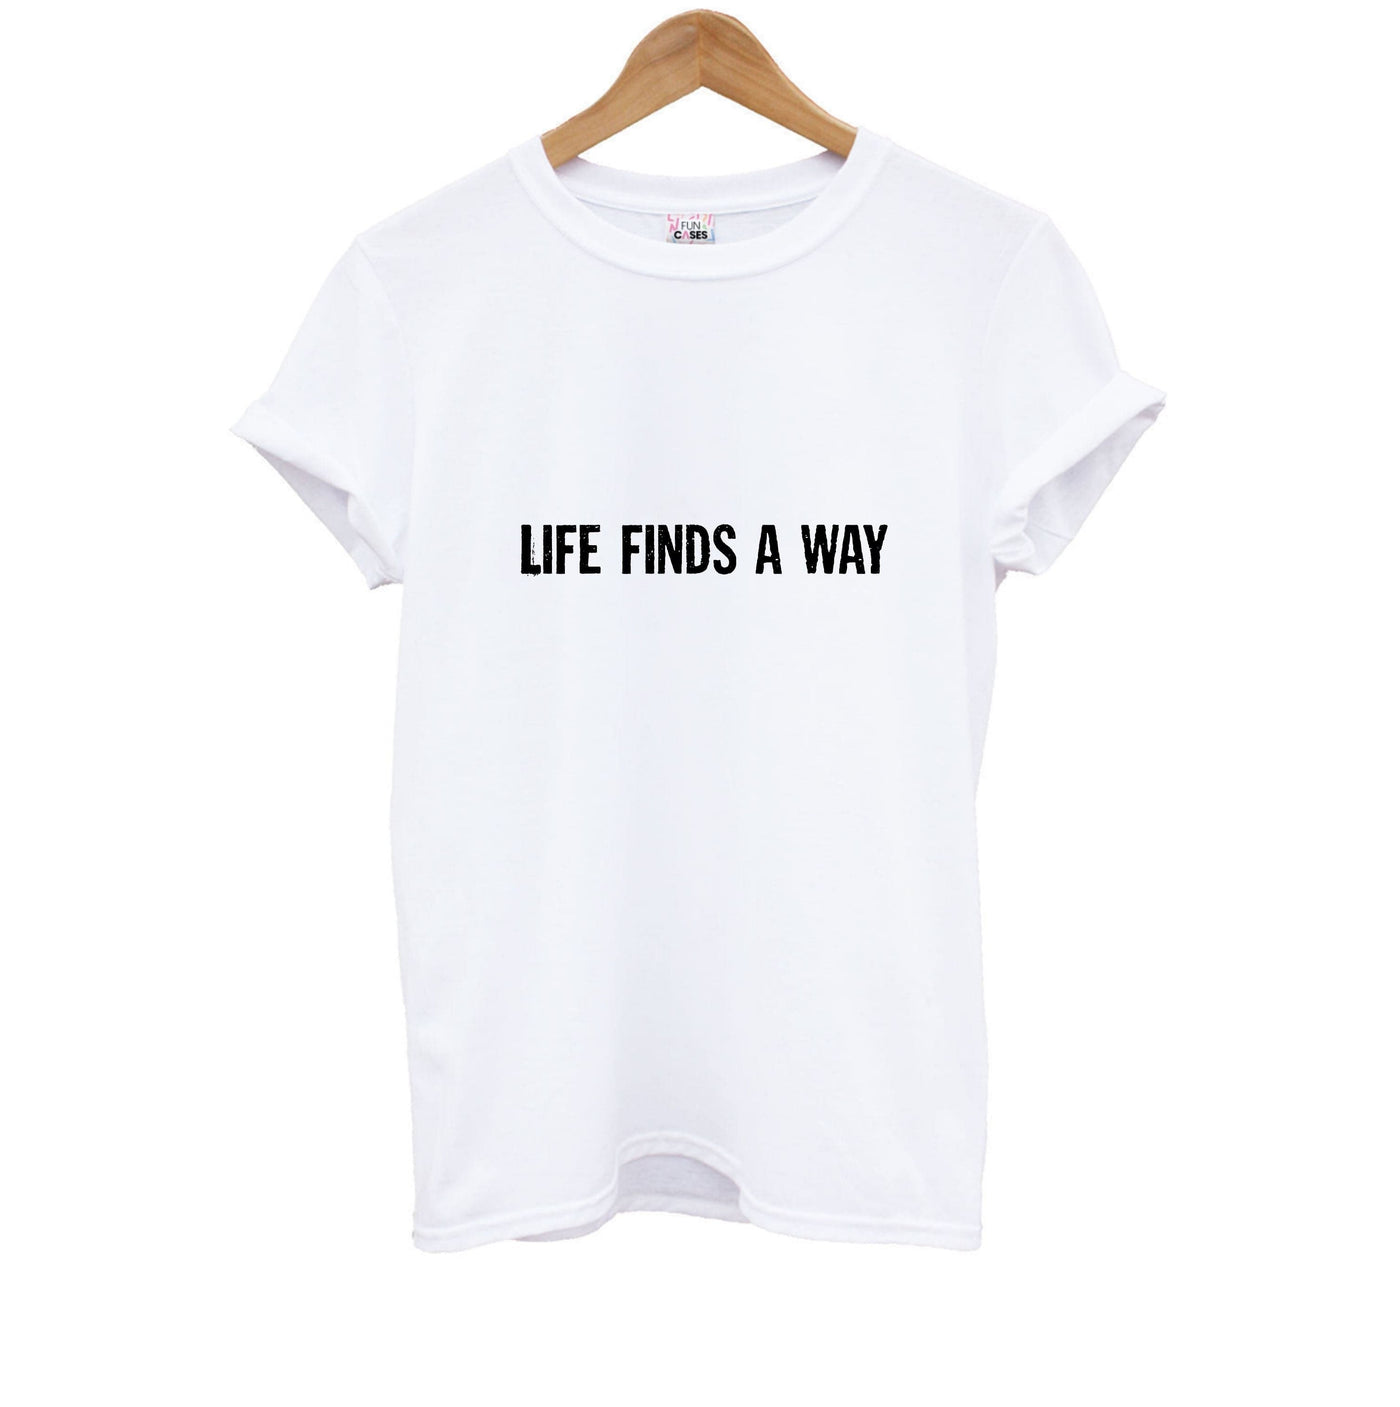 Life finds a way - Jurassic Park Kids T-Shirt